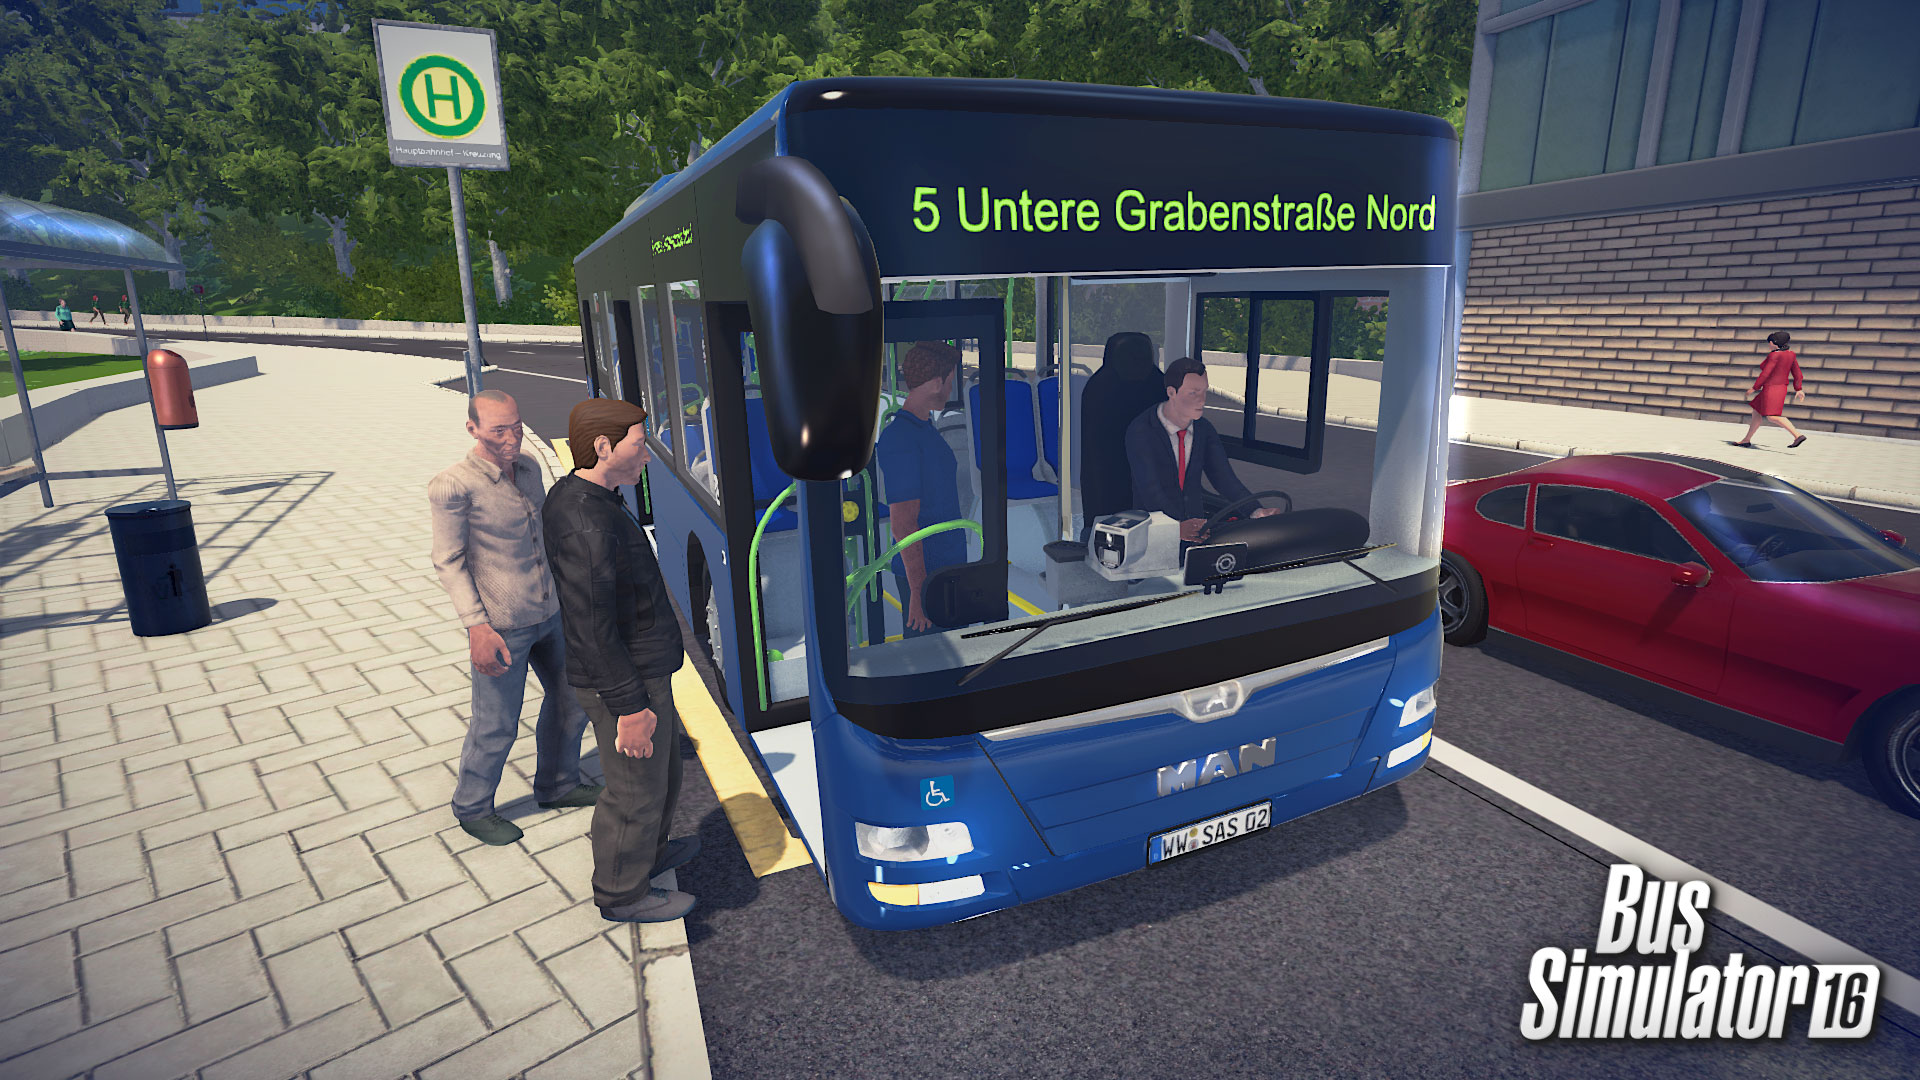 Bus Simulator 16 - screenshot 6